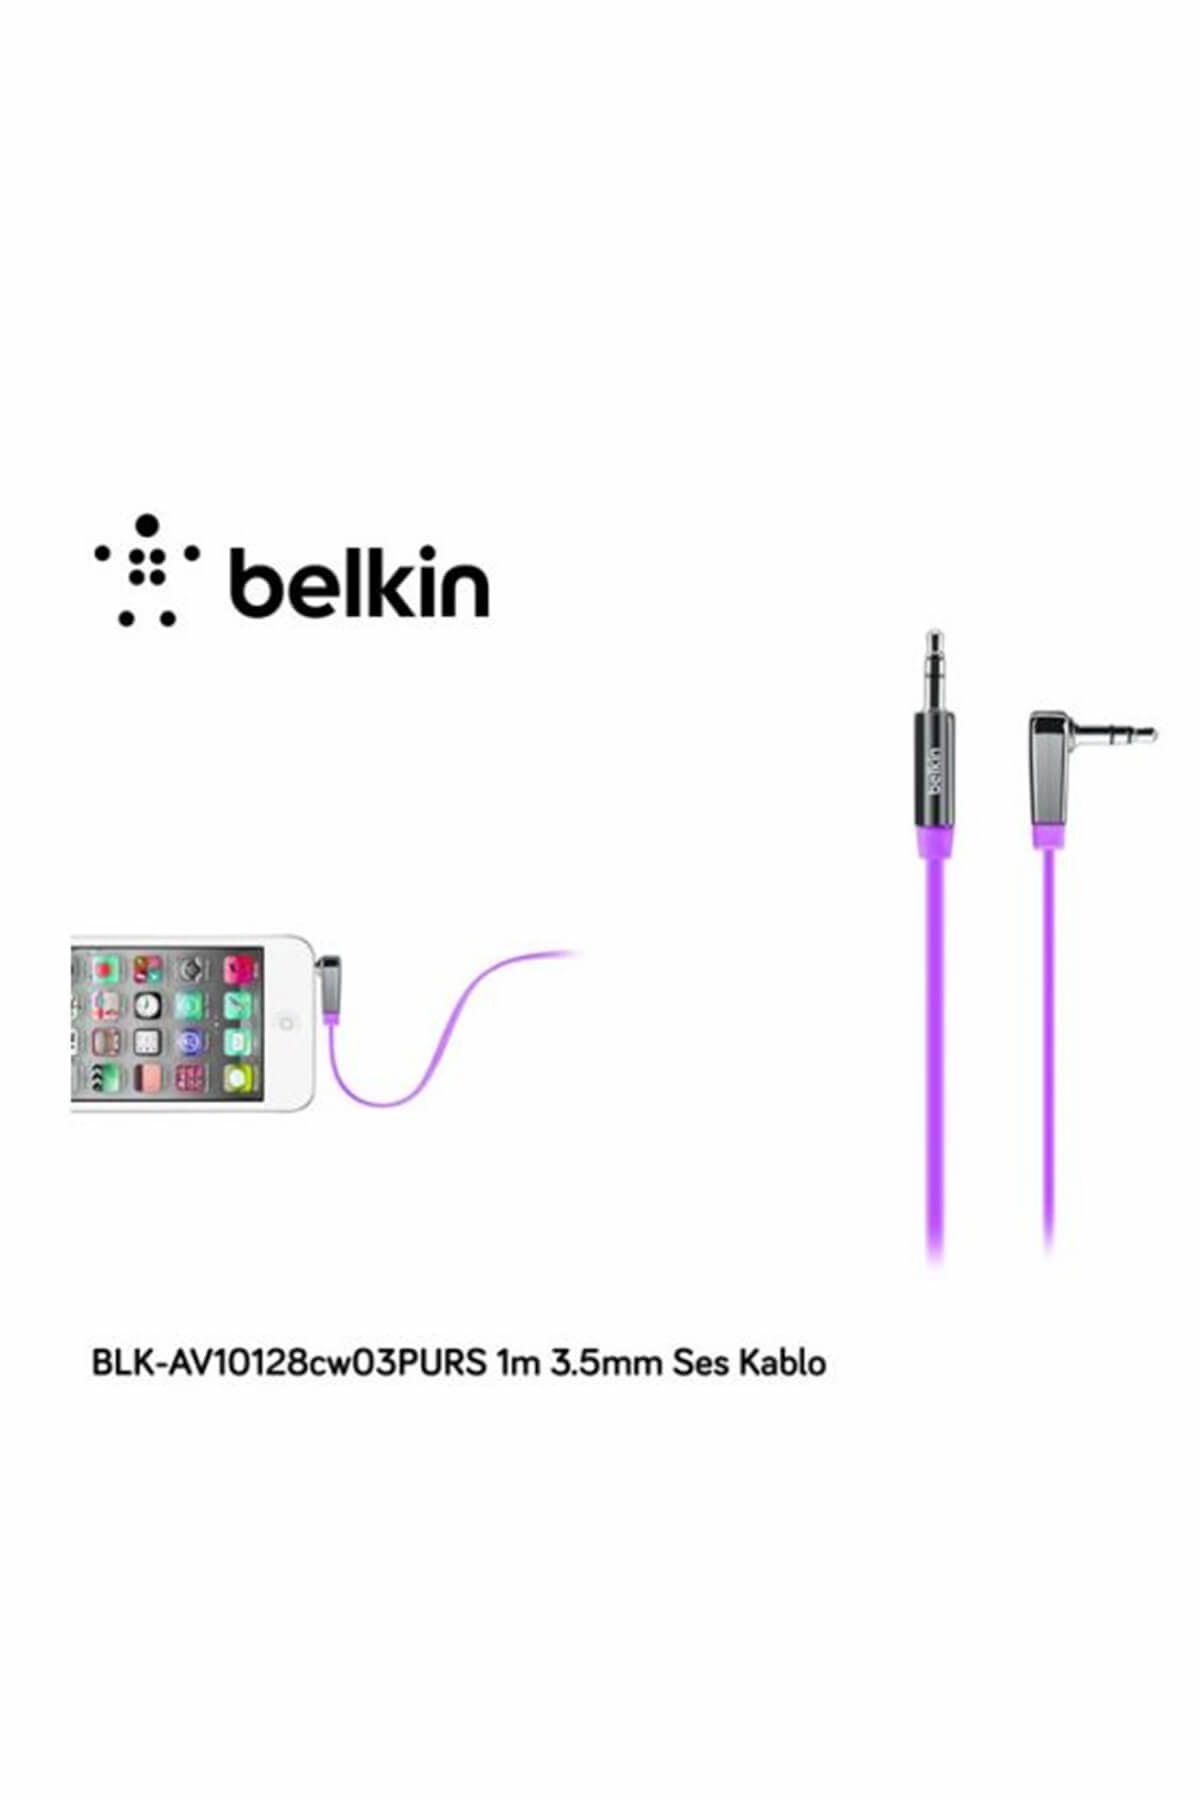 Belkin Blk-av10128cw03purs 1m 3.5mm Ses Kablo